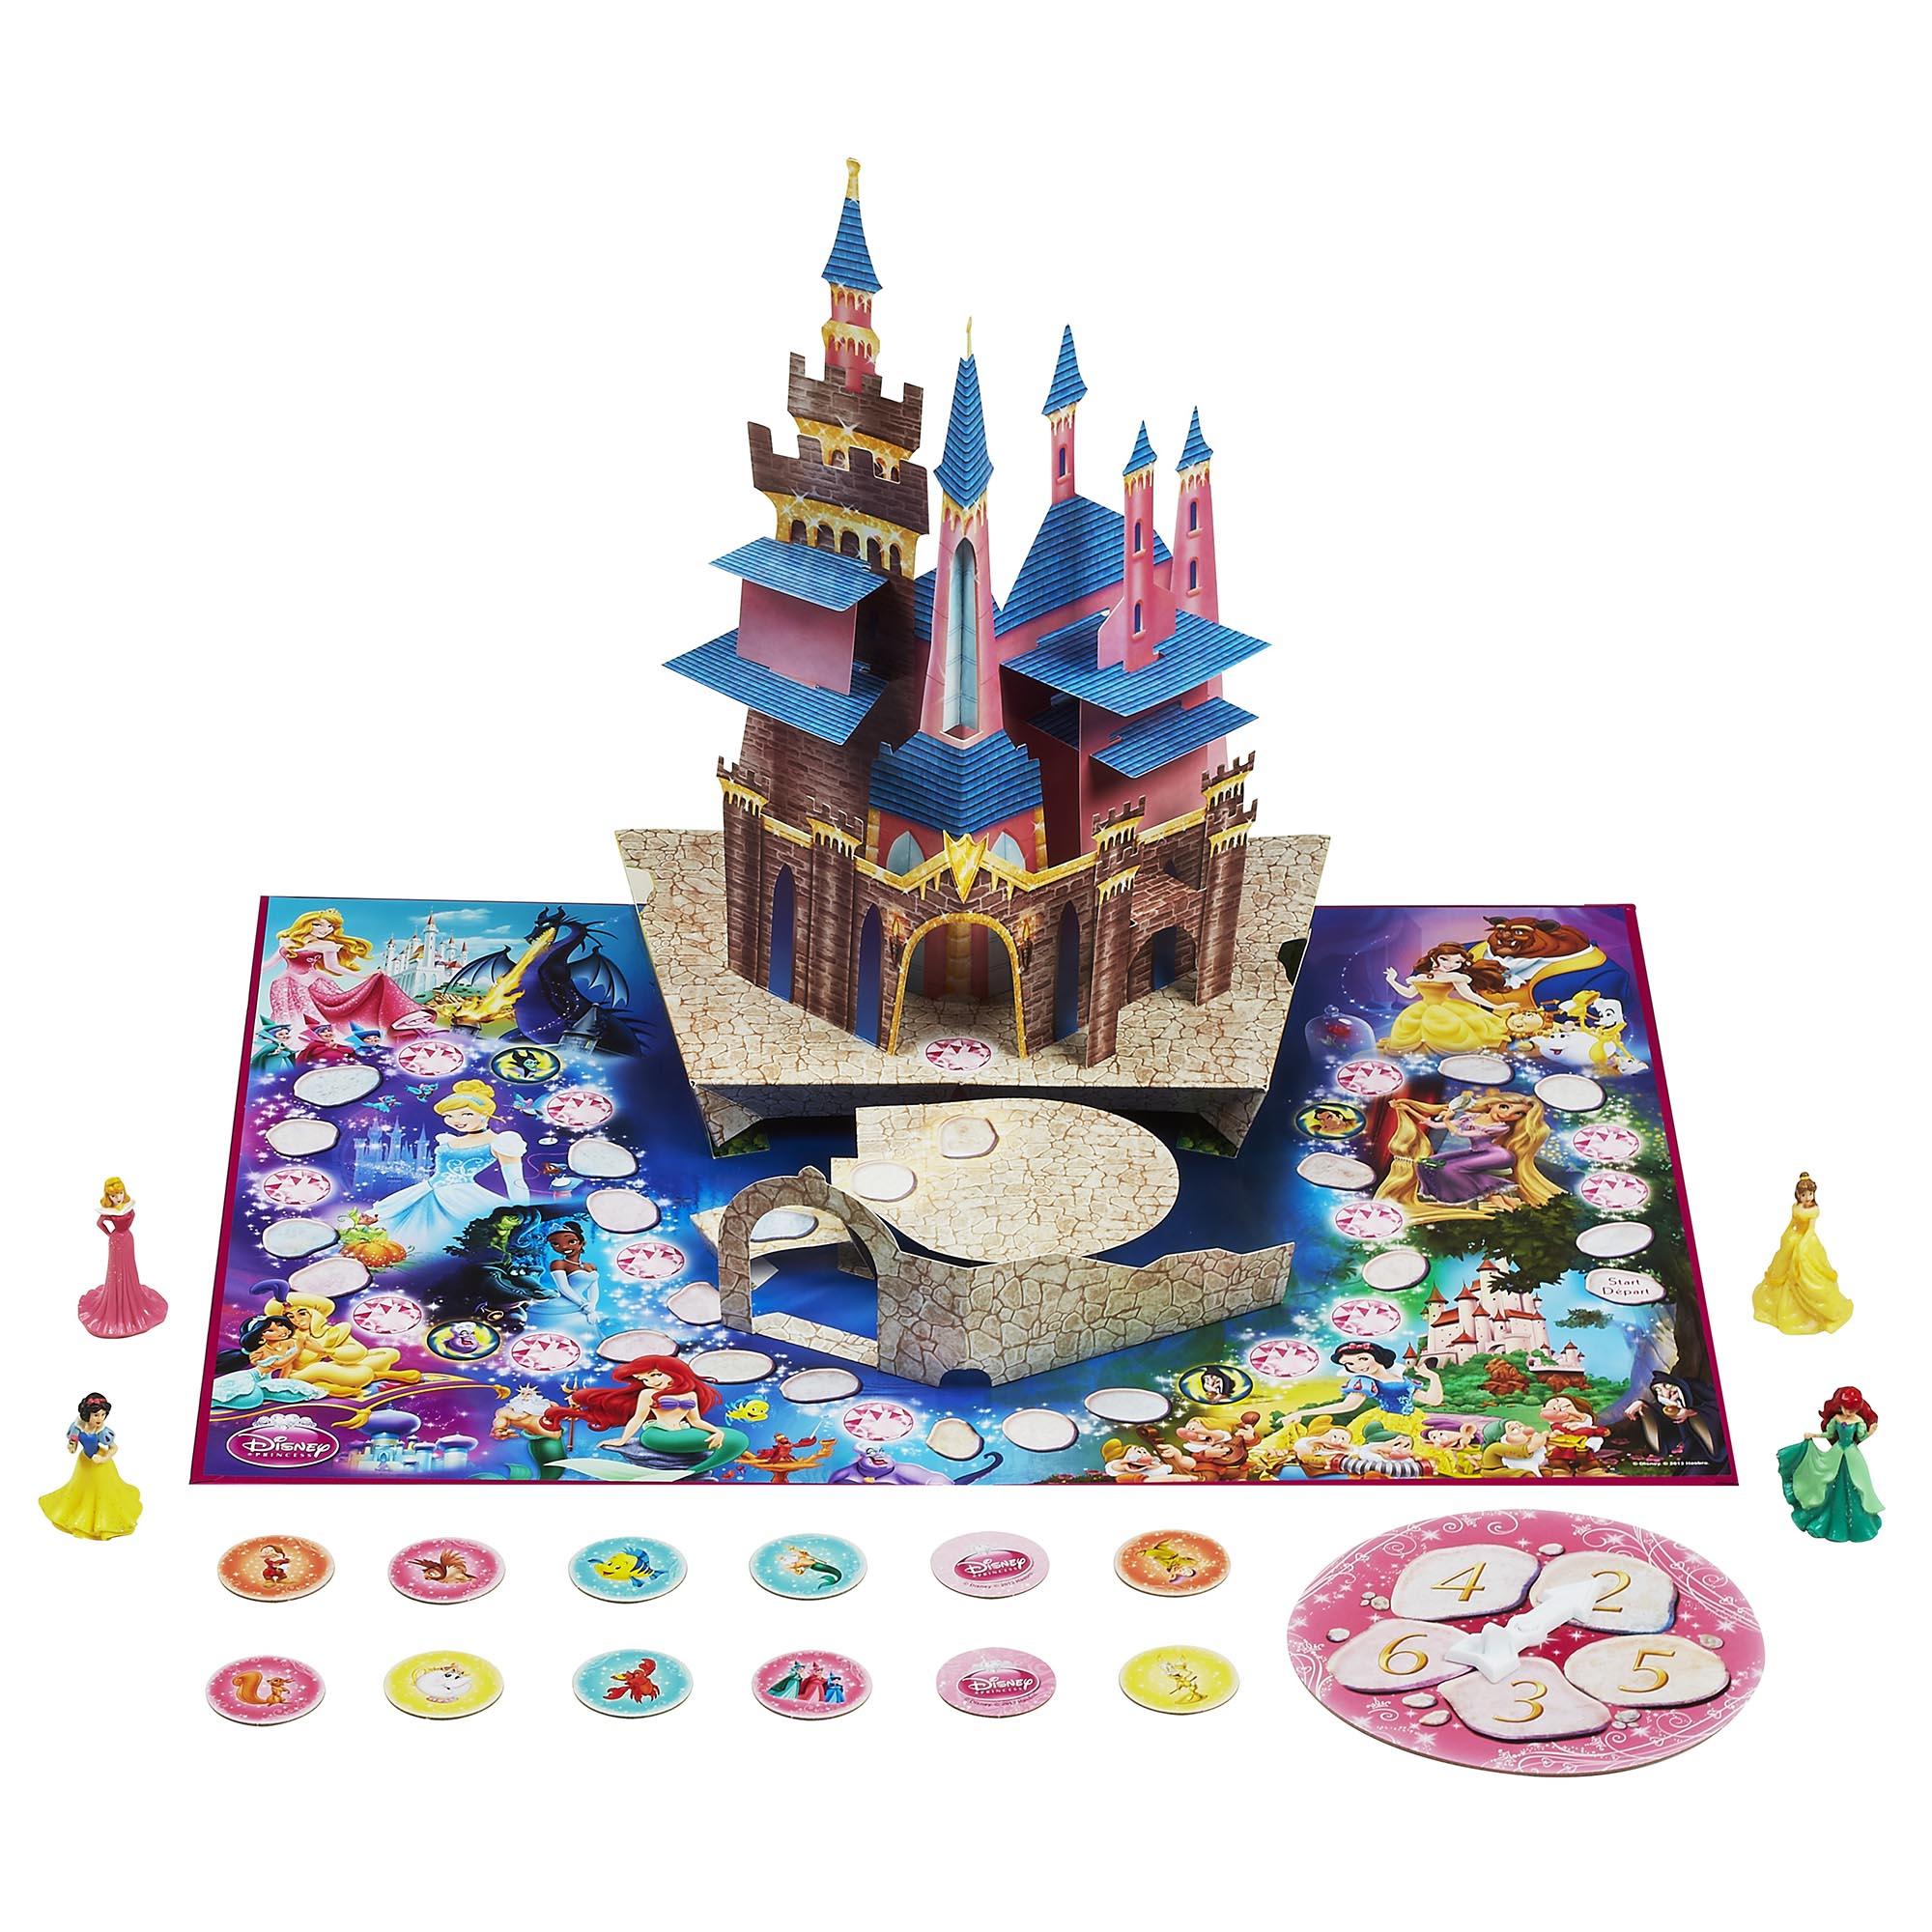 Замок принцессы игра. Disney Princess Hasbro замок Мэджик. Hasbro Pop-up Magic Волшебный замок. Настольная игра замок принцесс Дисней Hasbro. Настольная игра принцессы Диснея замком.